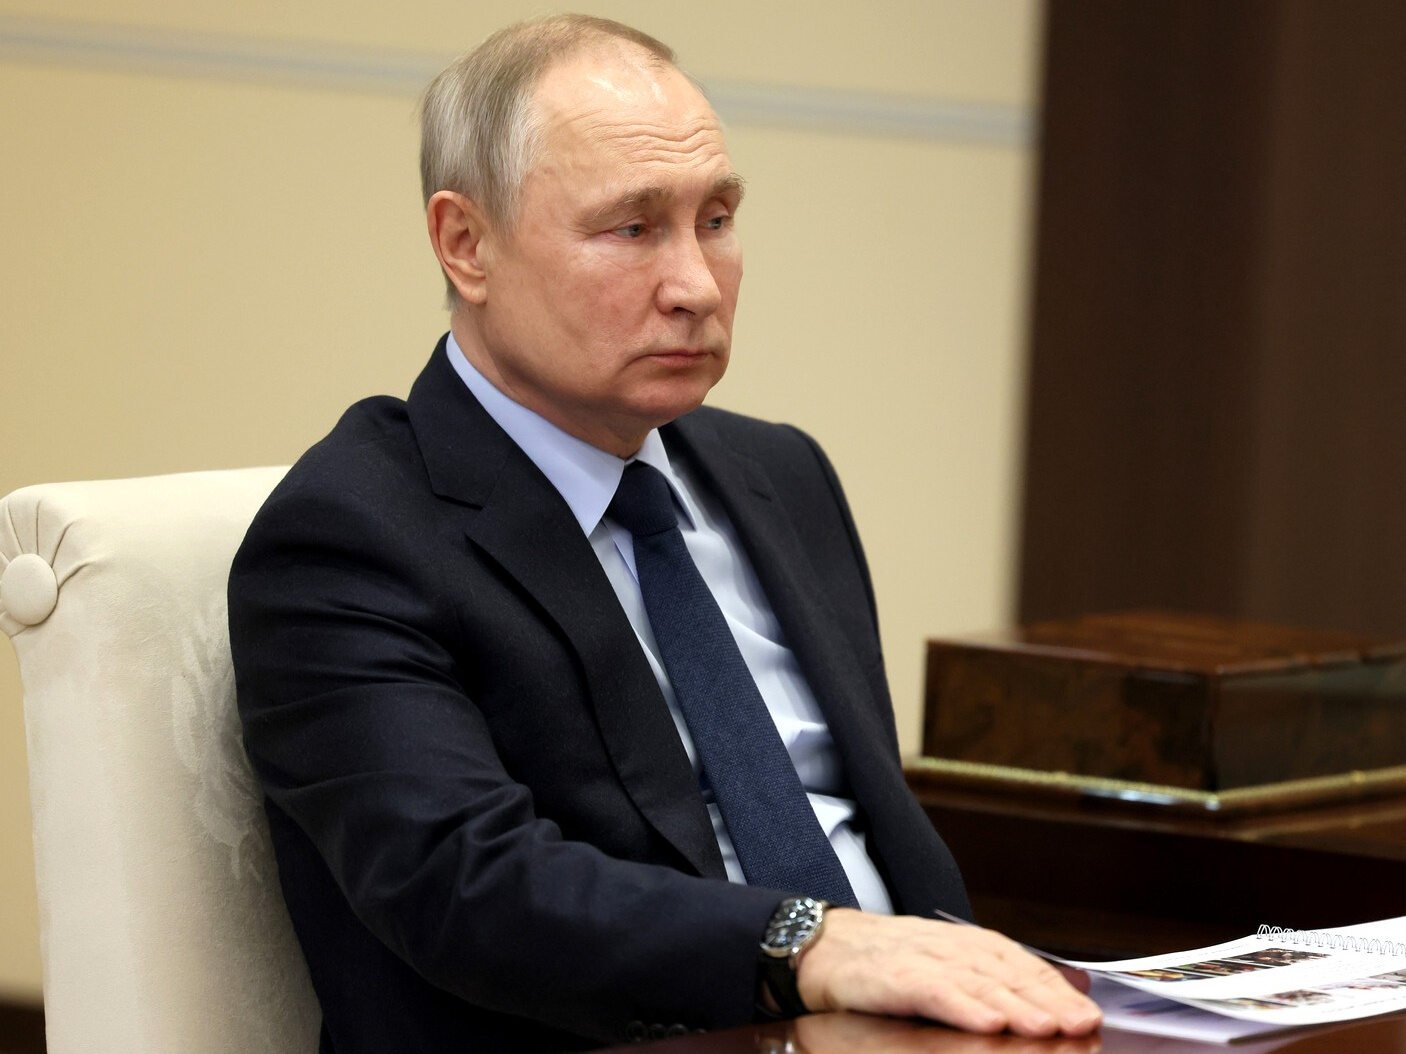 NA ŻYWO: Władimir Putin podjął decyzję. W Moskwie powstanie ogromny schron